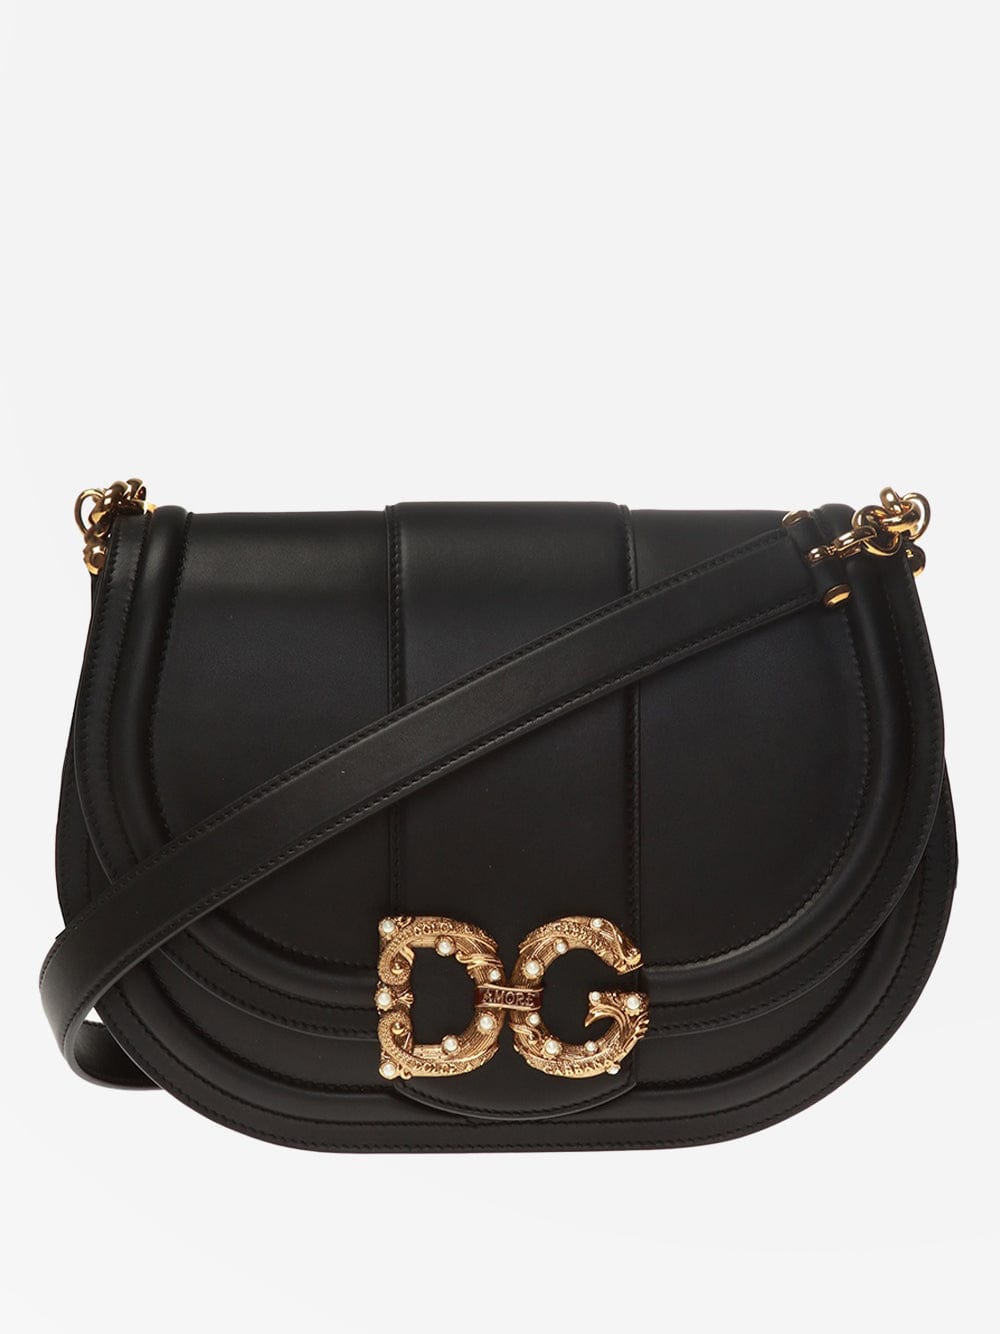 Dolce & Gabbana DG Amore Medium Shoulder Bag